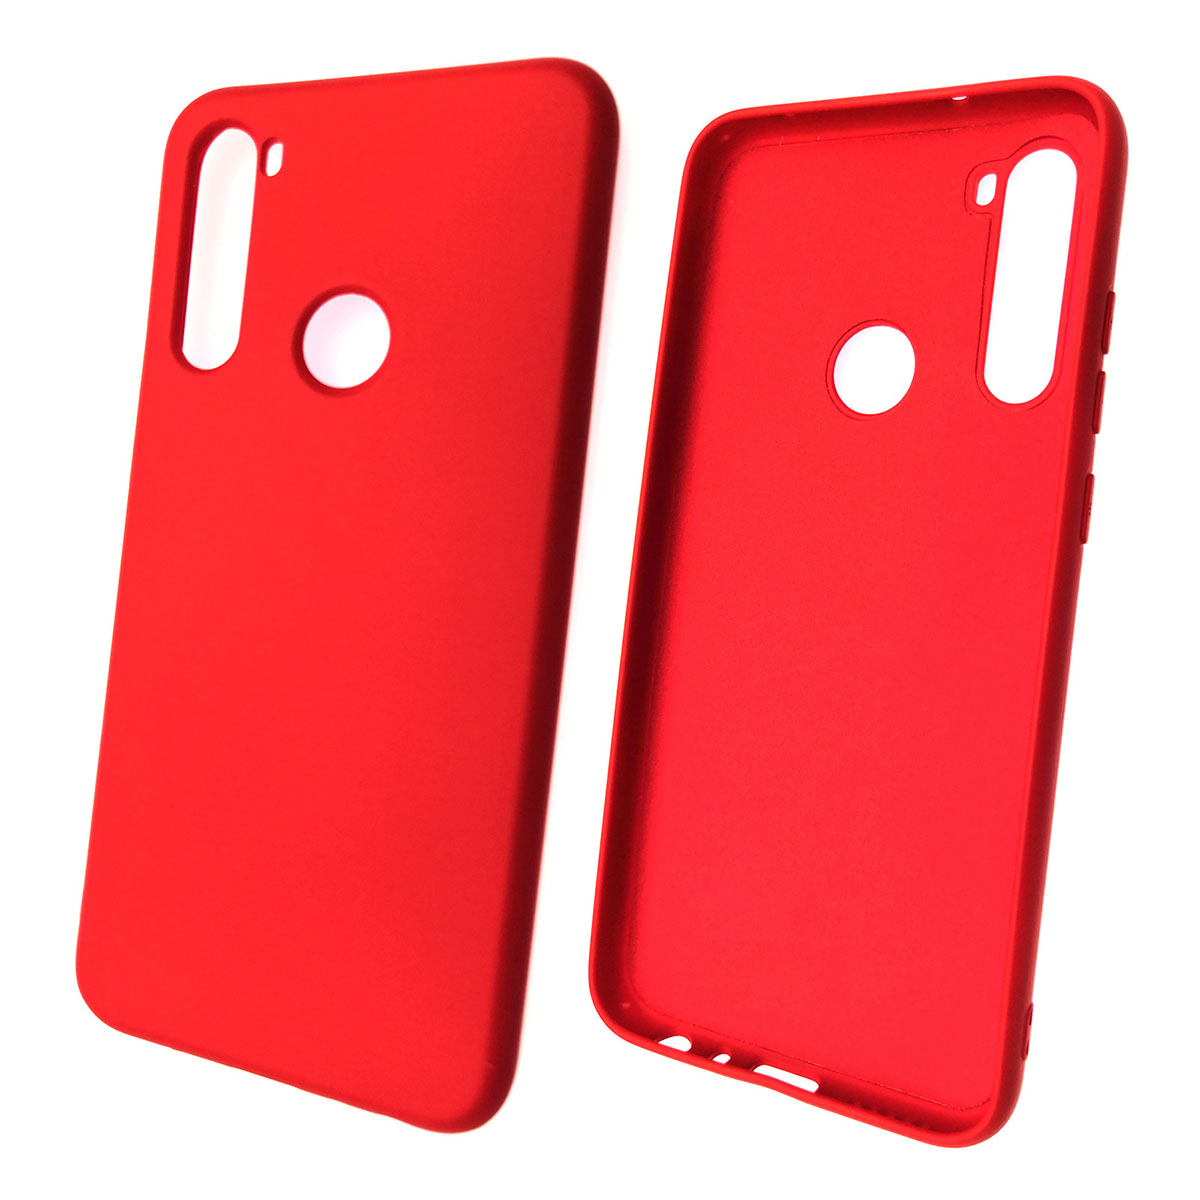 Чехол накладка для XIAOMI Redmi Note 8T, силикон, цвет красный.